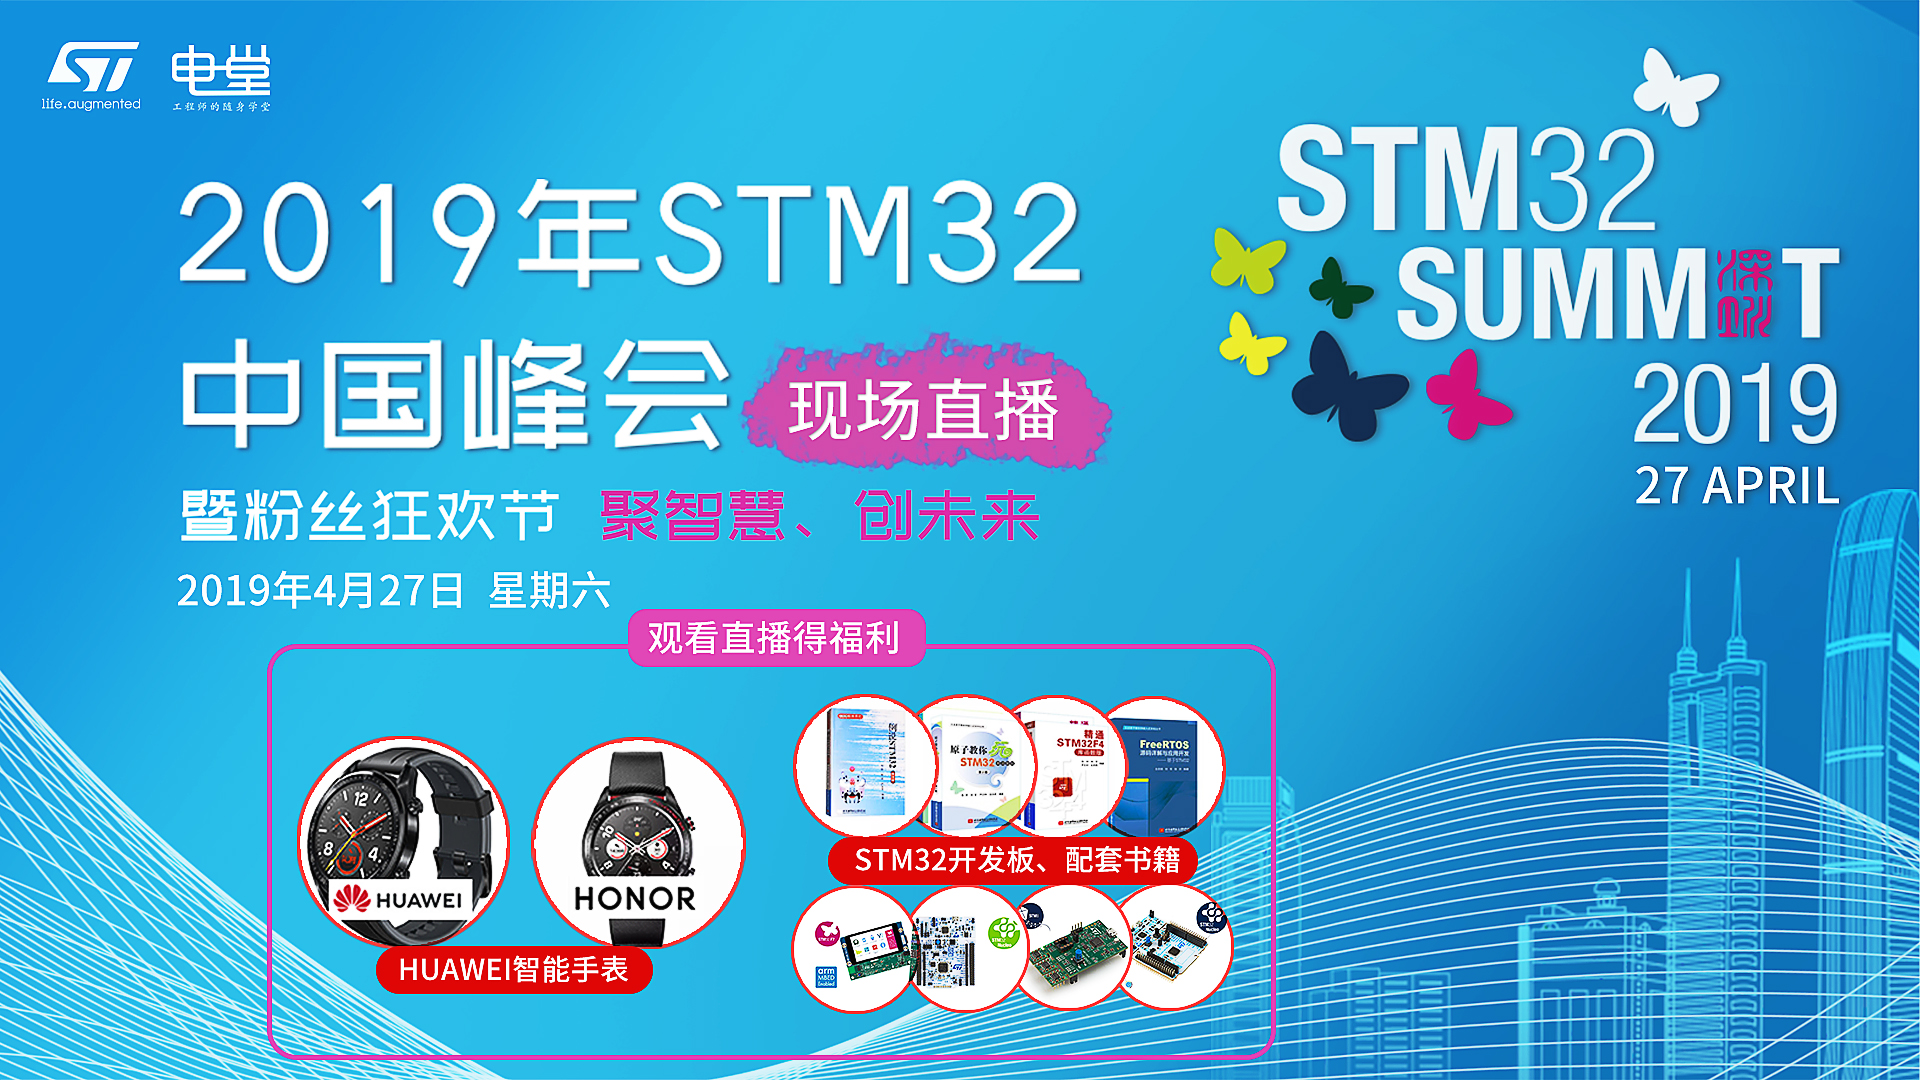 2019 STM32峰会 - 粉丝狂欢节